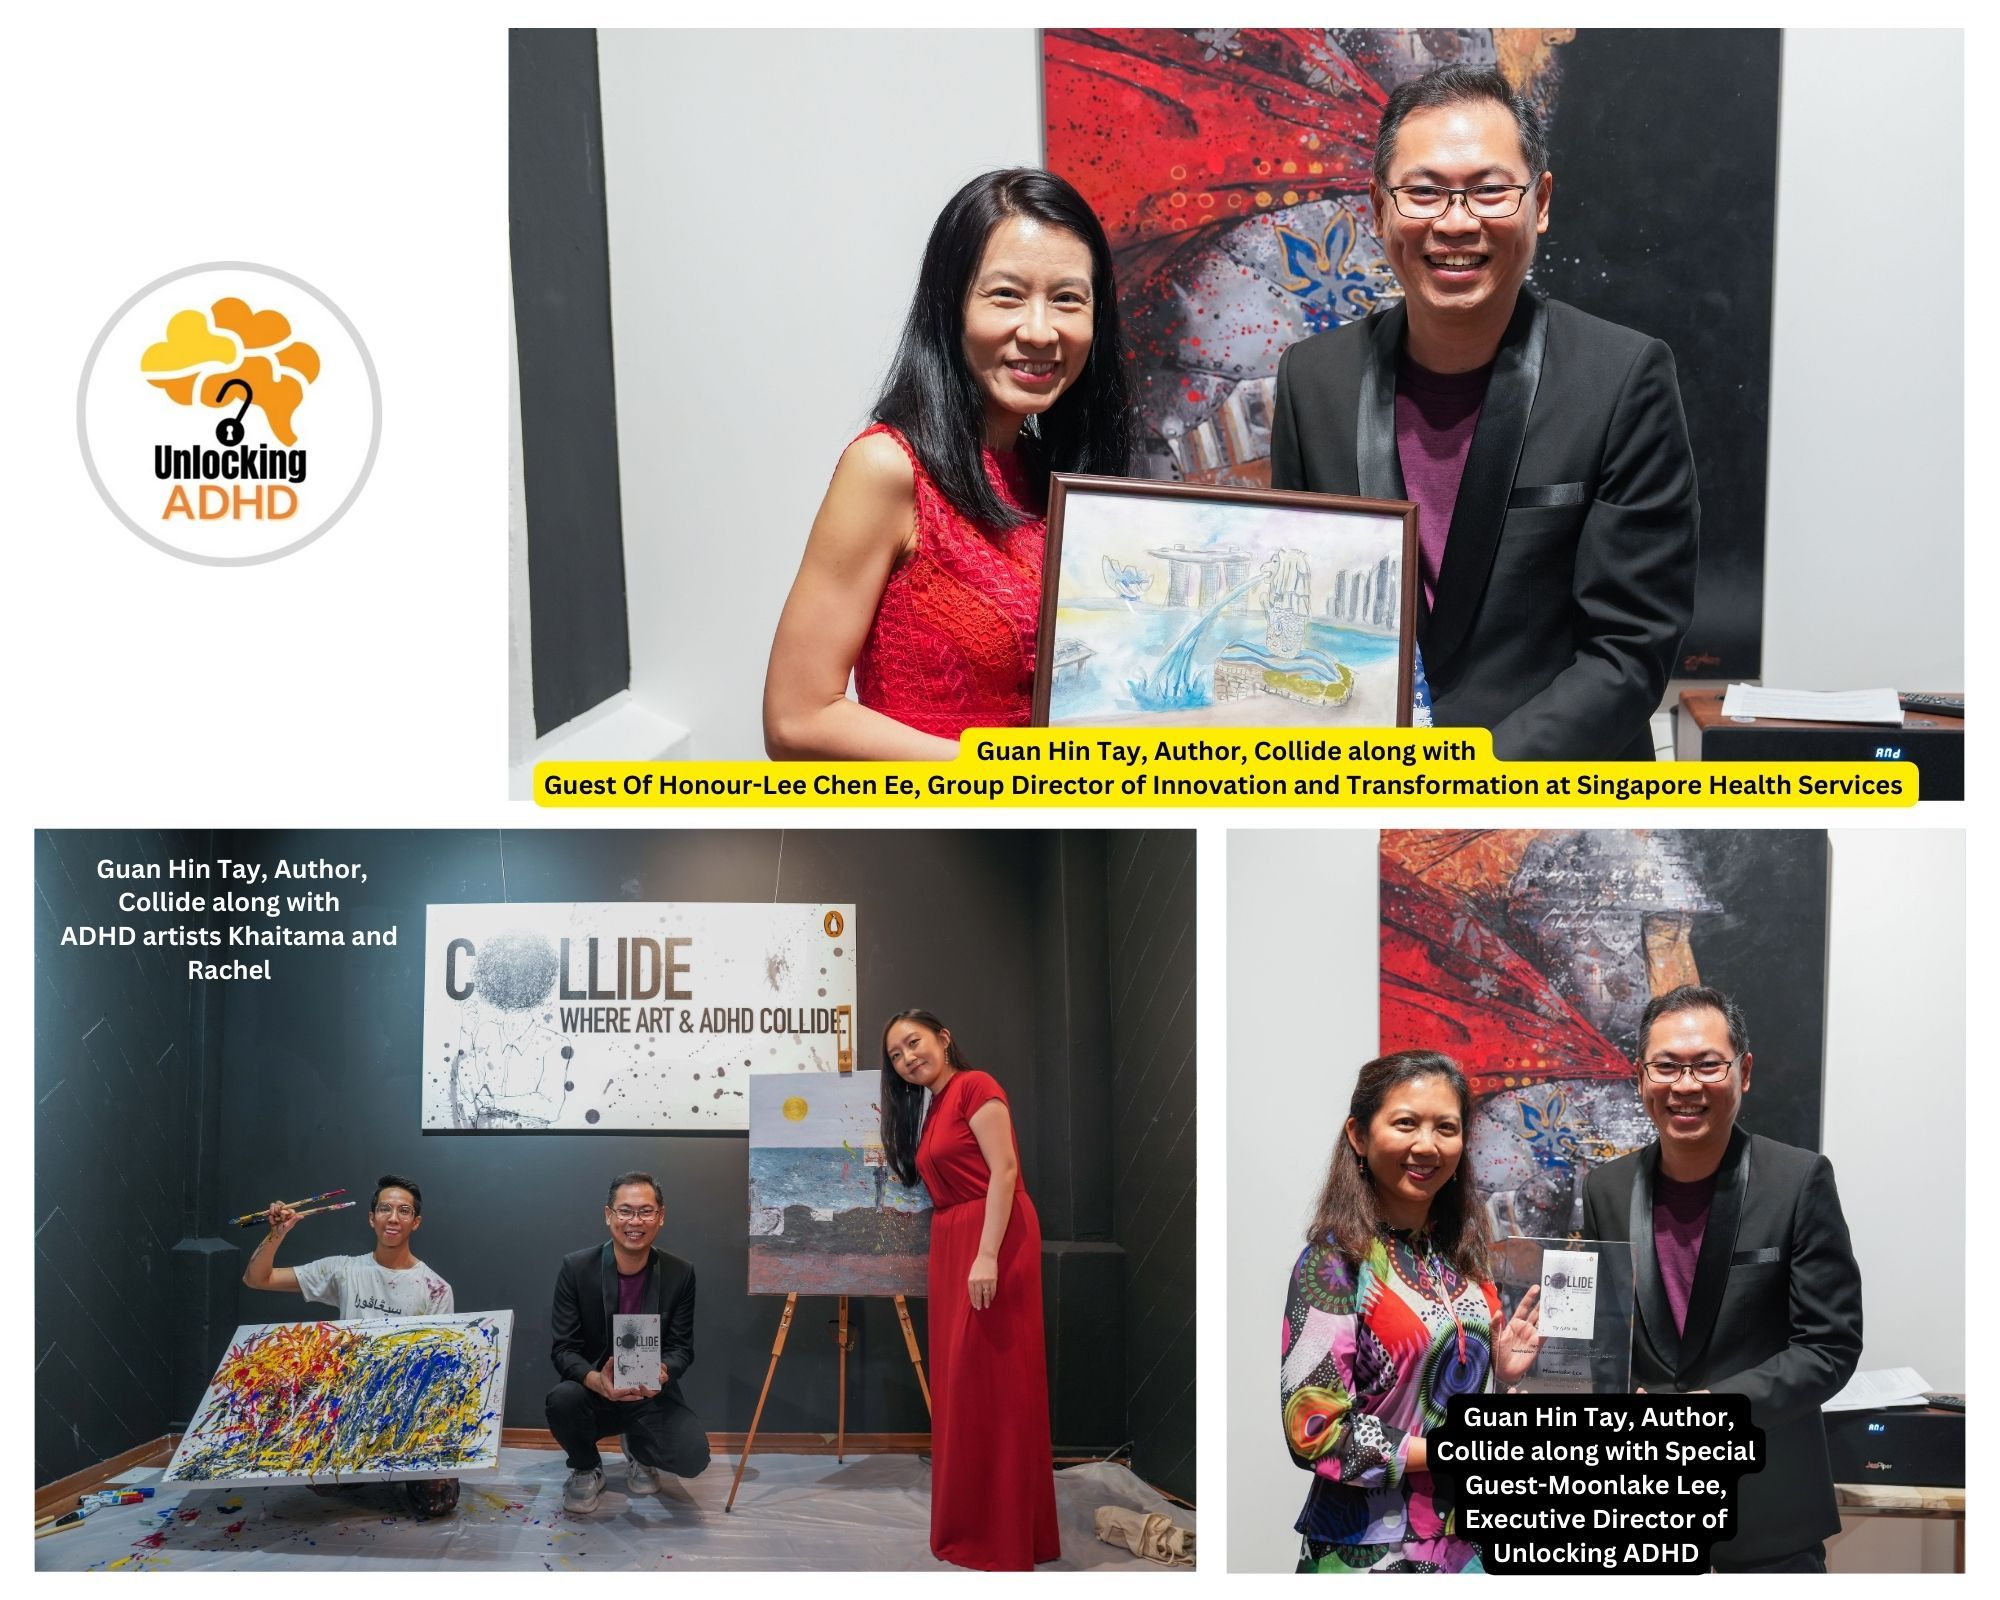 Cingapura lança seu primeiro evento de pintura ao vivo com artistas com TDAH, inspirado em 'Collide' de Tay Guan Hin"